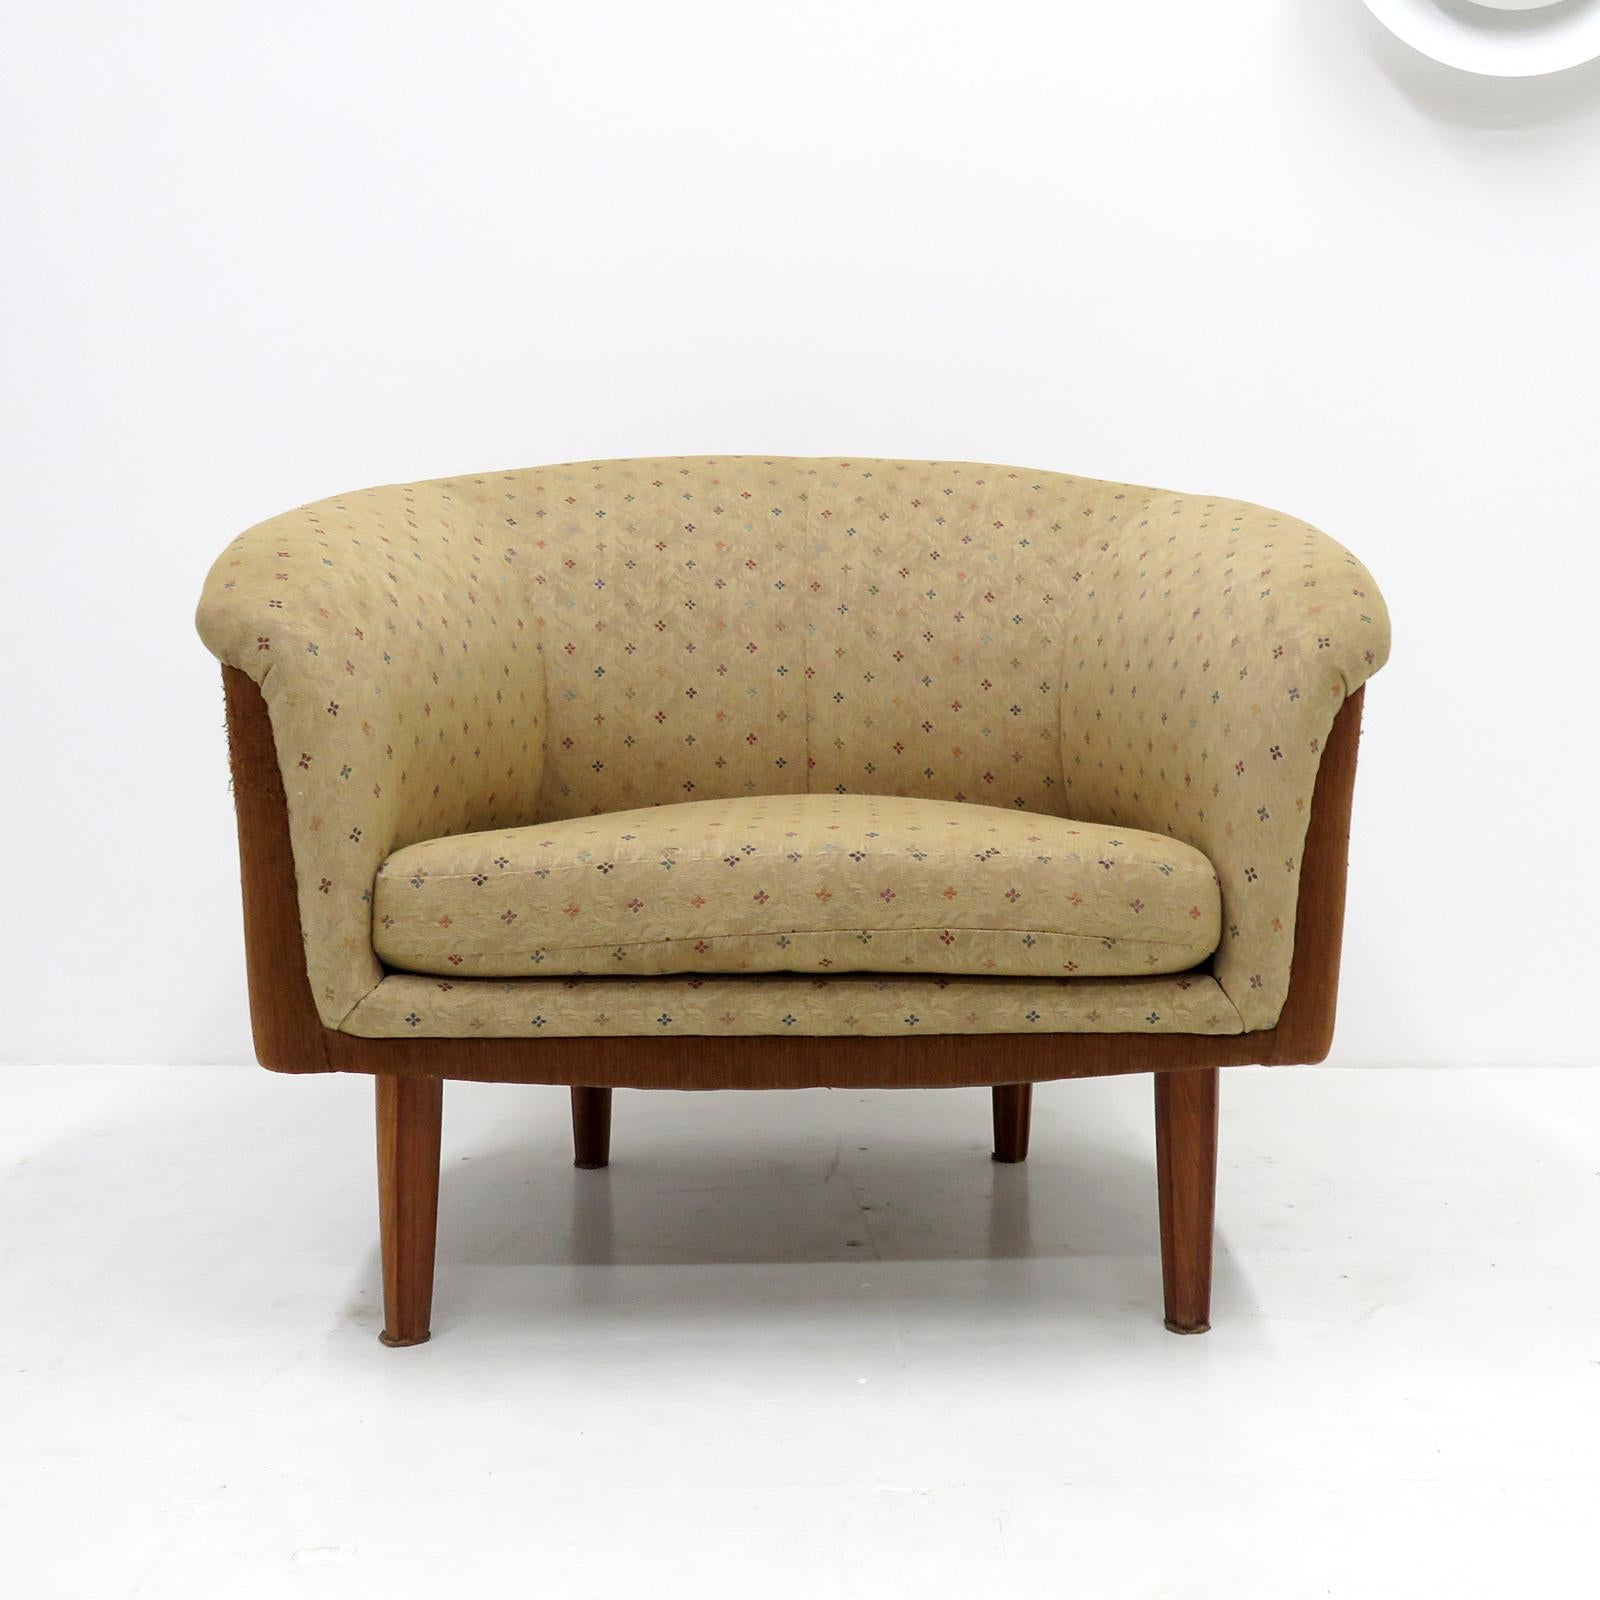 Merveilleuse paire de chaises longues suédoises surdimensionnées, 1960, avec un revêtement floral beige d'origine avec des accents colorés et des pieds cannelés en acajou, le tissu marron noisette sur les côtés des chaises montre une usure mineure.